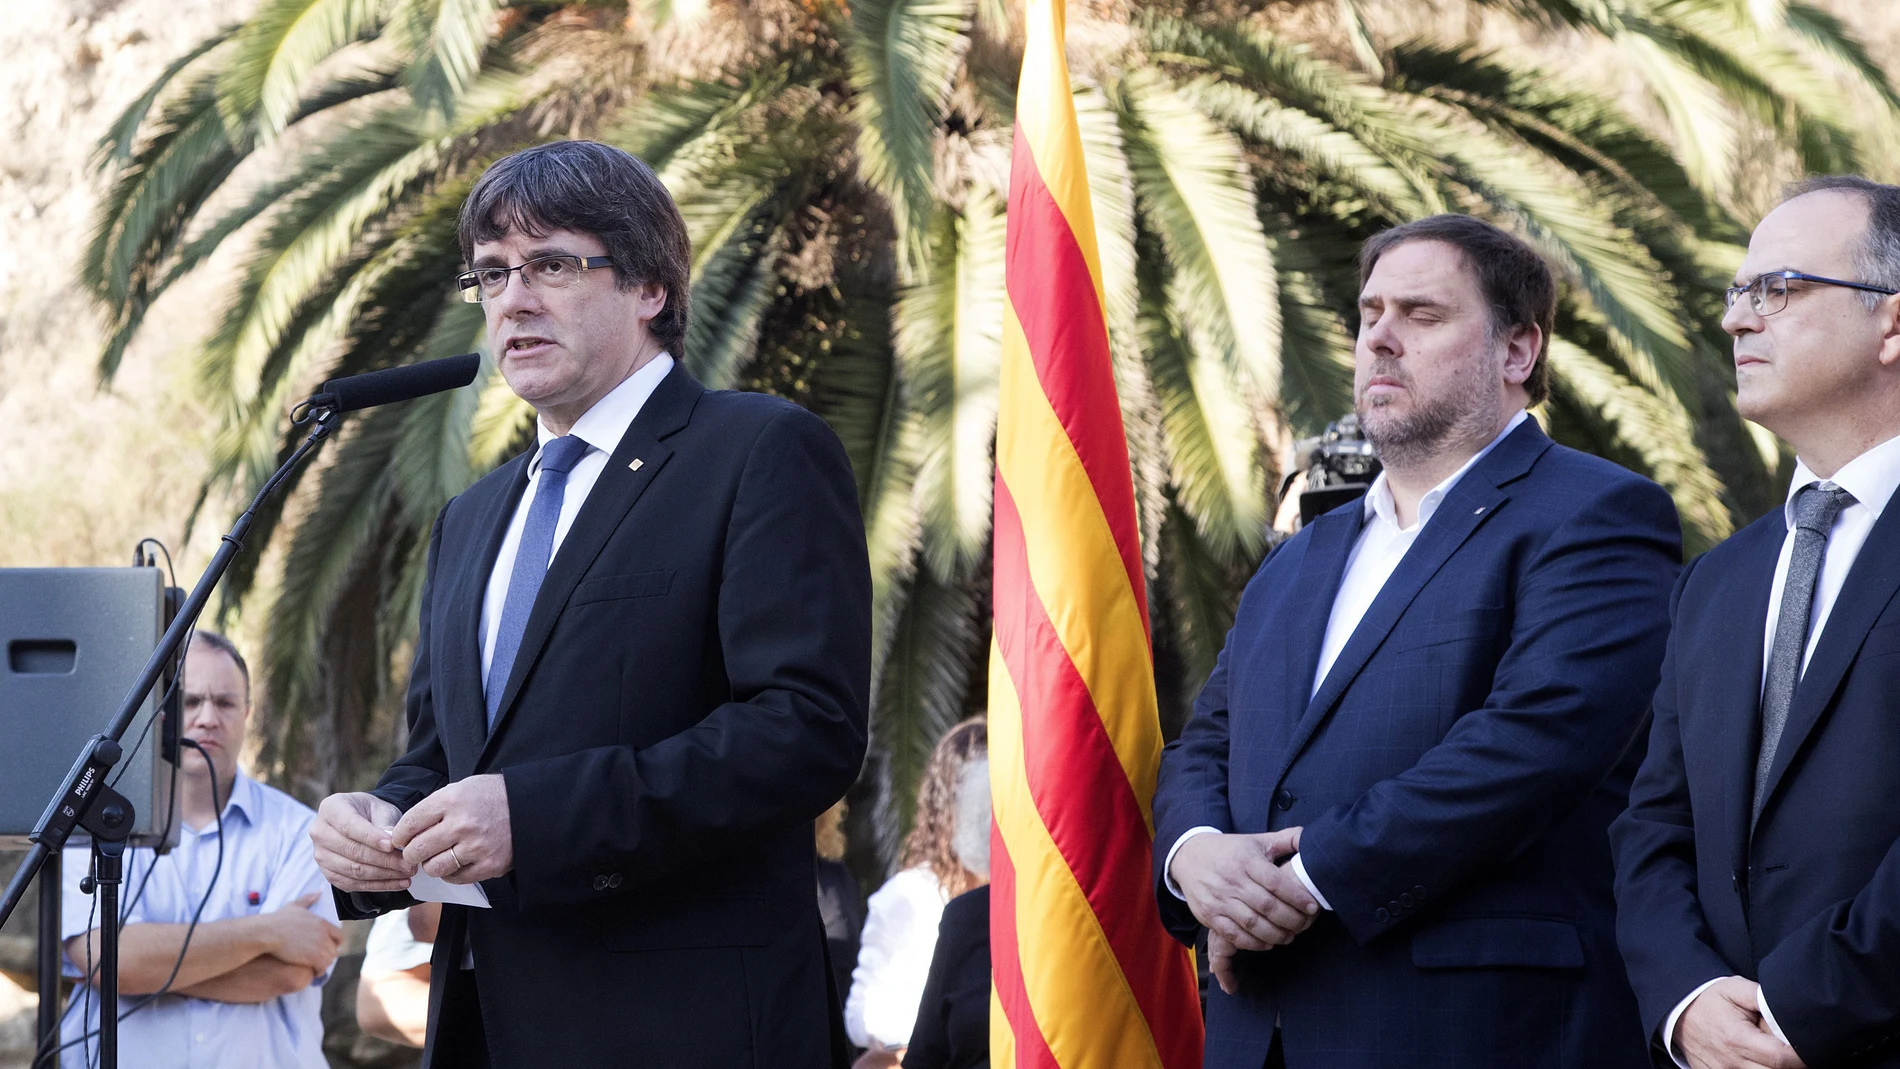 El presidente de la Generalitat, Carles Puigdemont durante el homenaje al exexpresident Luís Companys